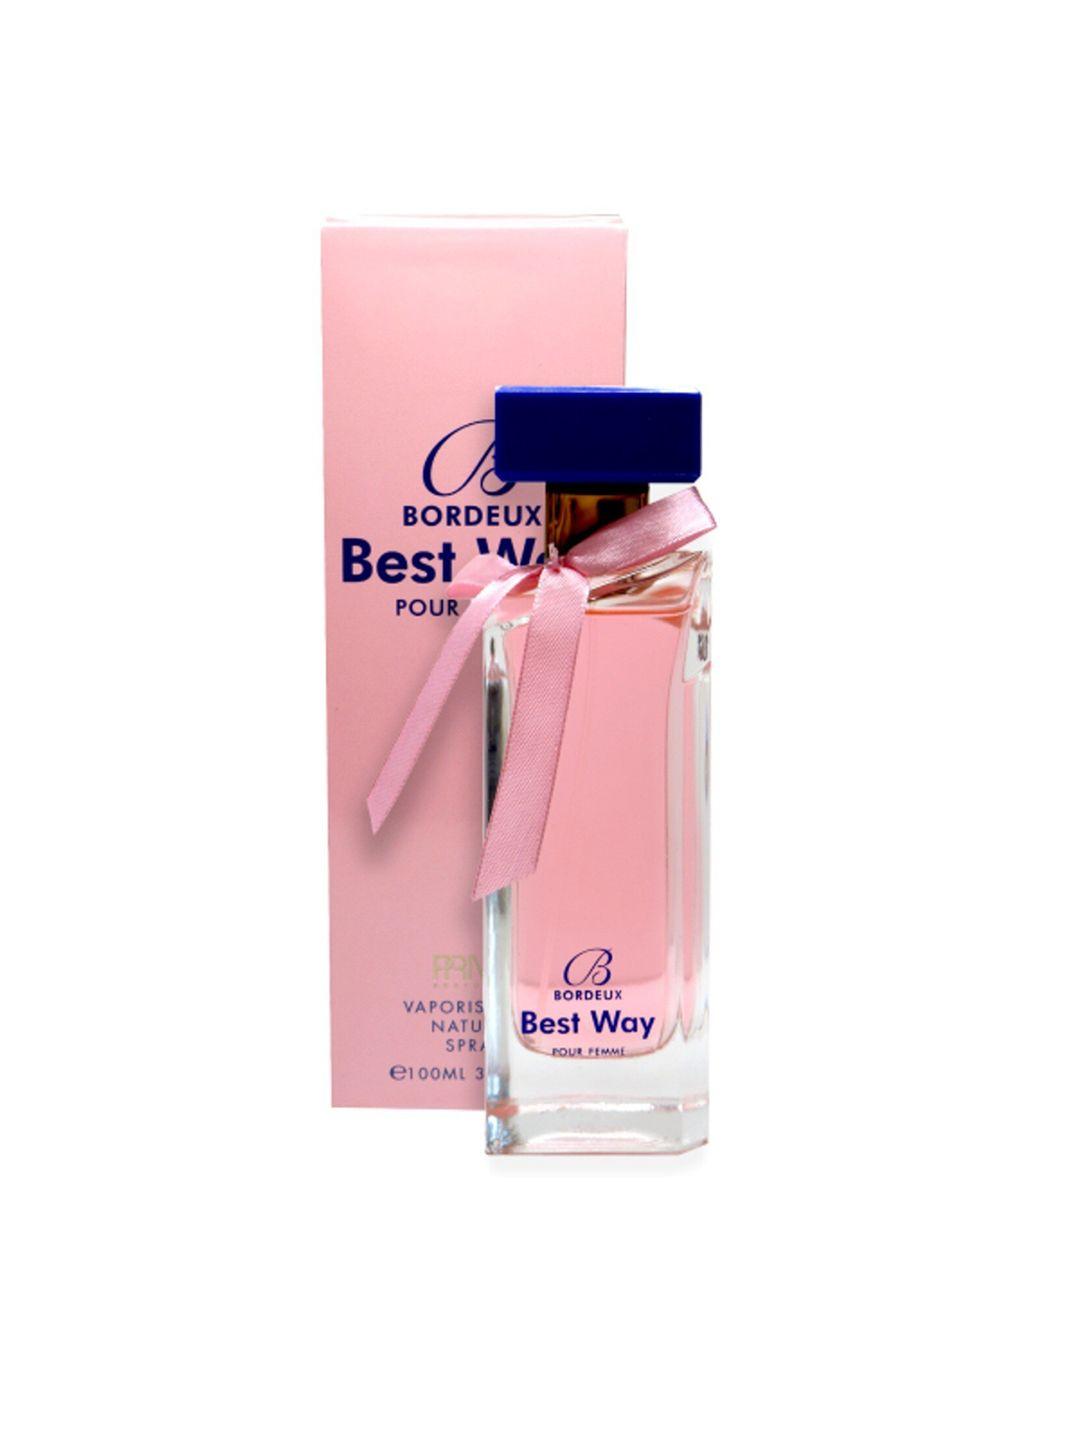 emper-women-prive-bordeux-best-way-eau-de-parfum-100-ml